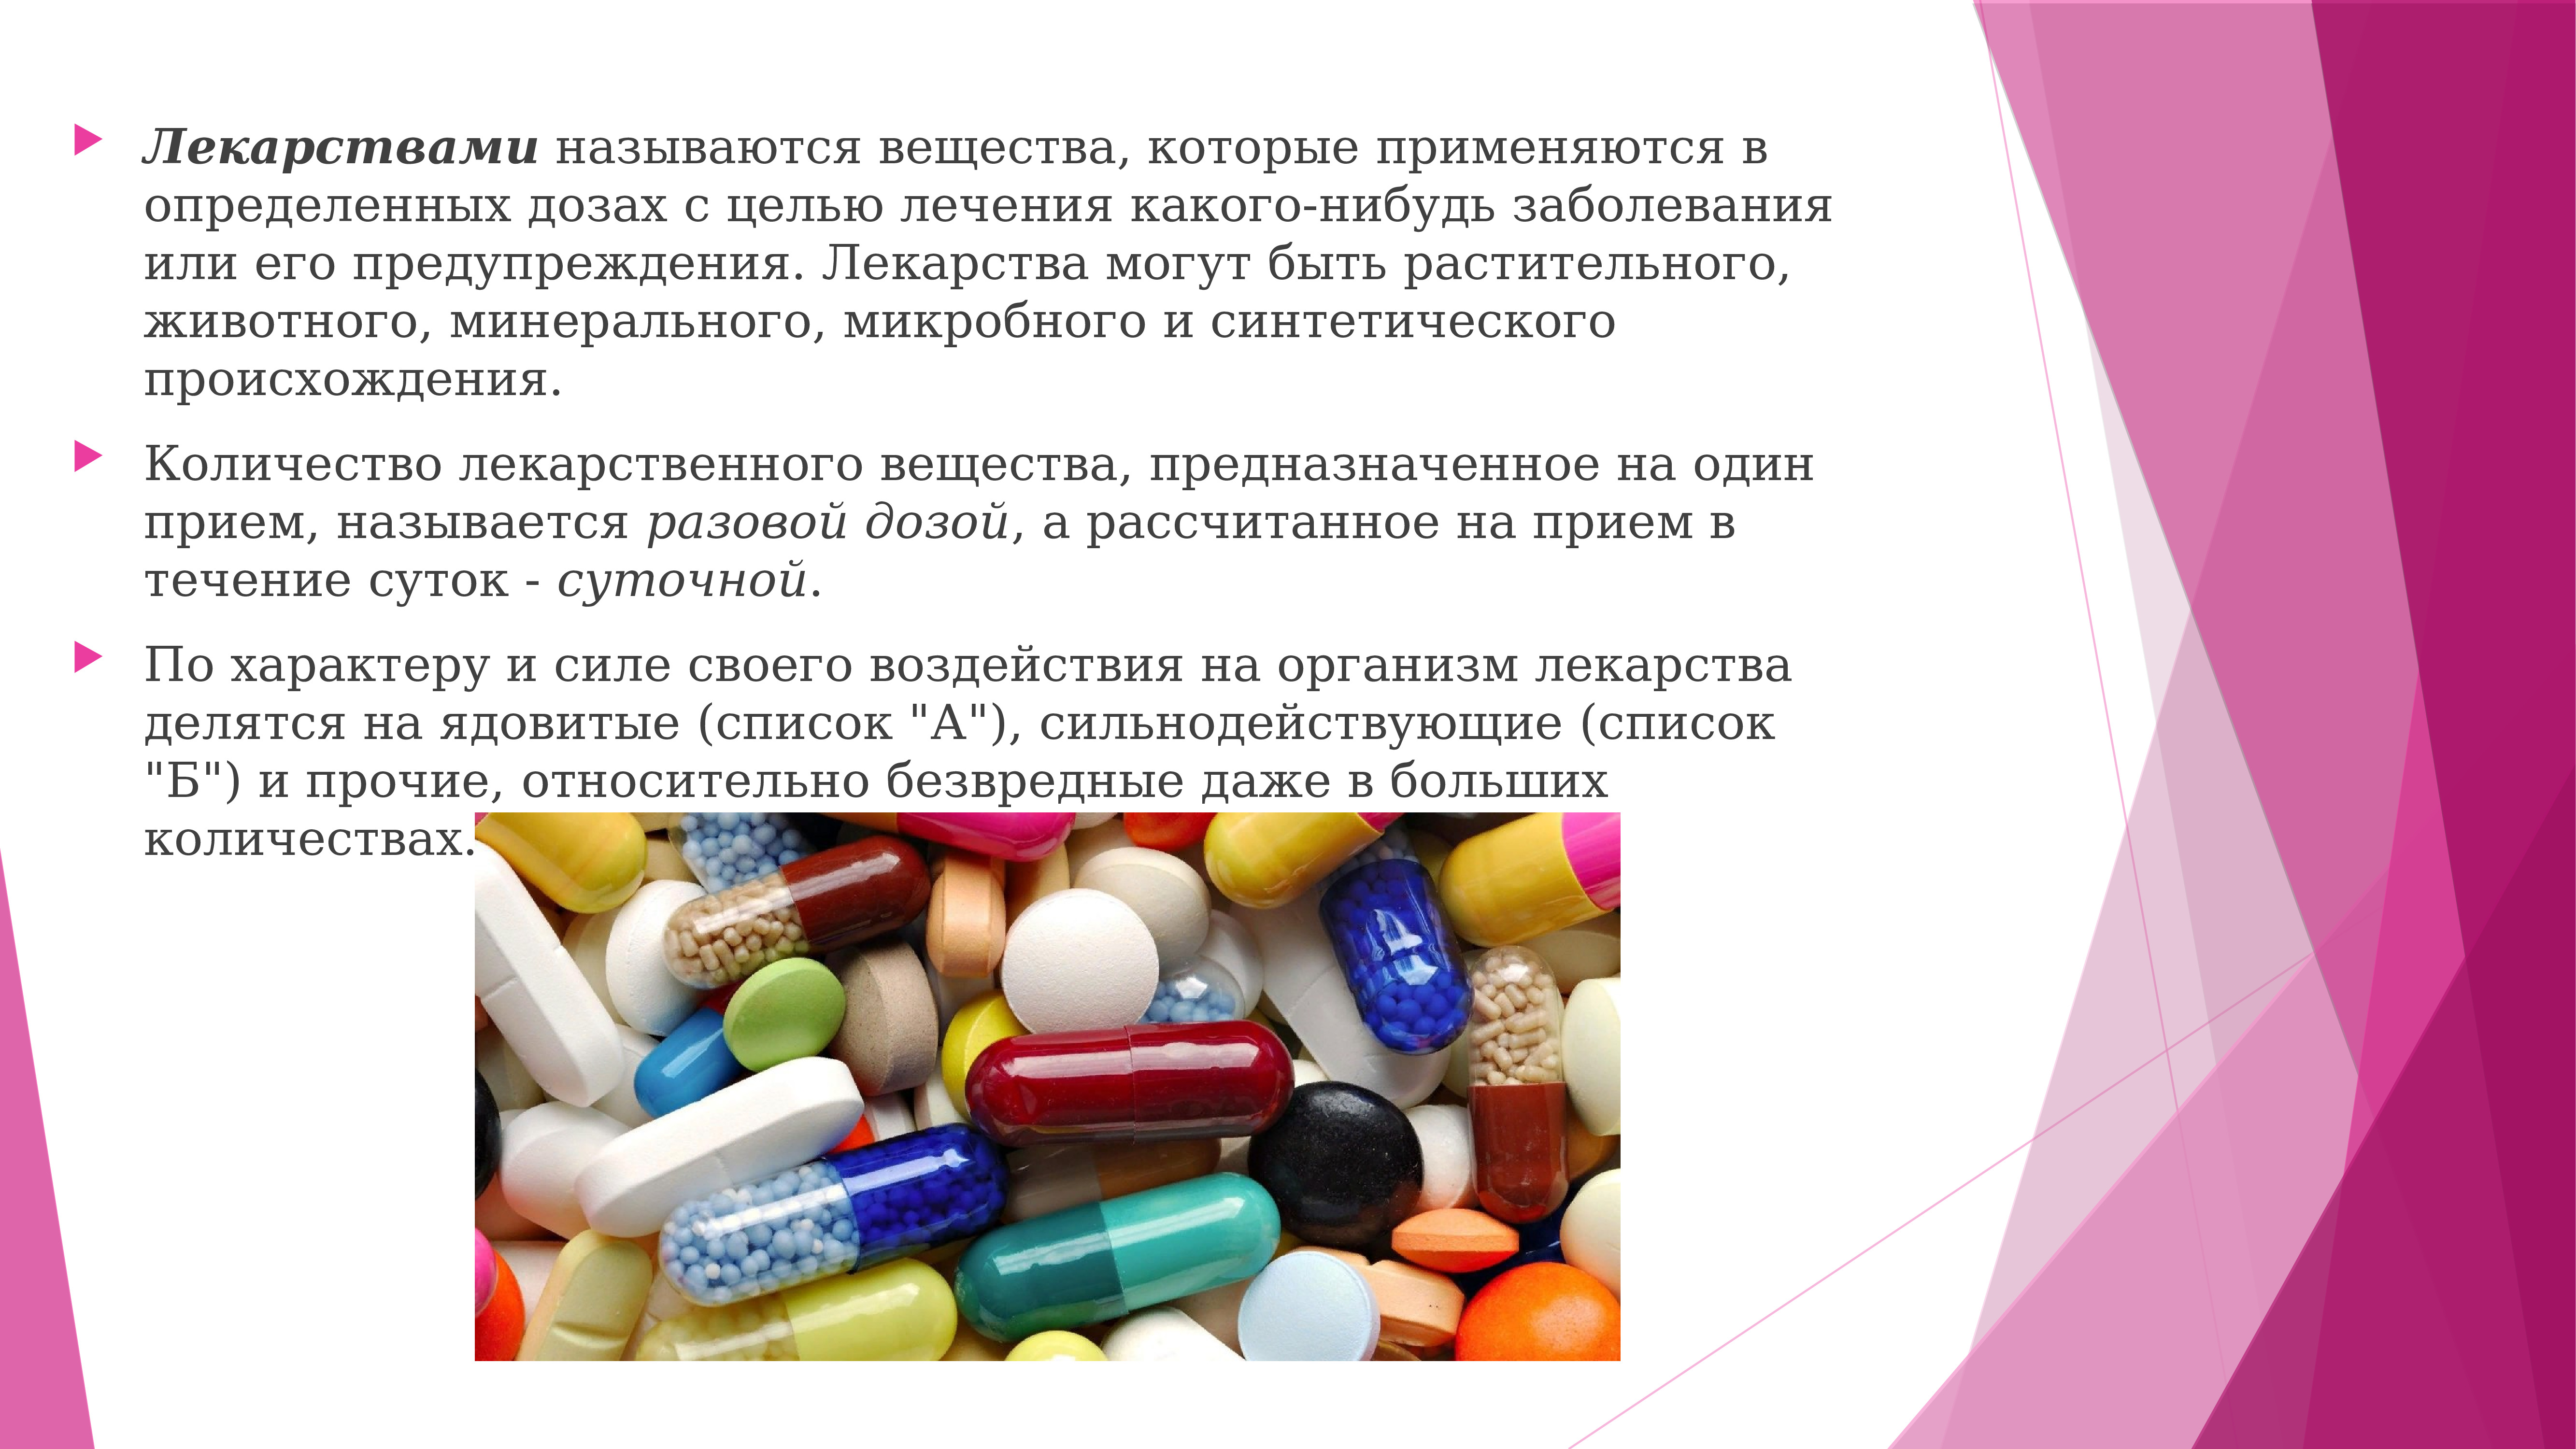 Какие таблетки применяются при. Лекарственное вещество это. Слайд с лекарственными препаратами. Применение лекарственных веществ. Назначение лекарственных средств.